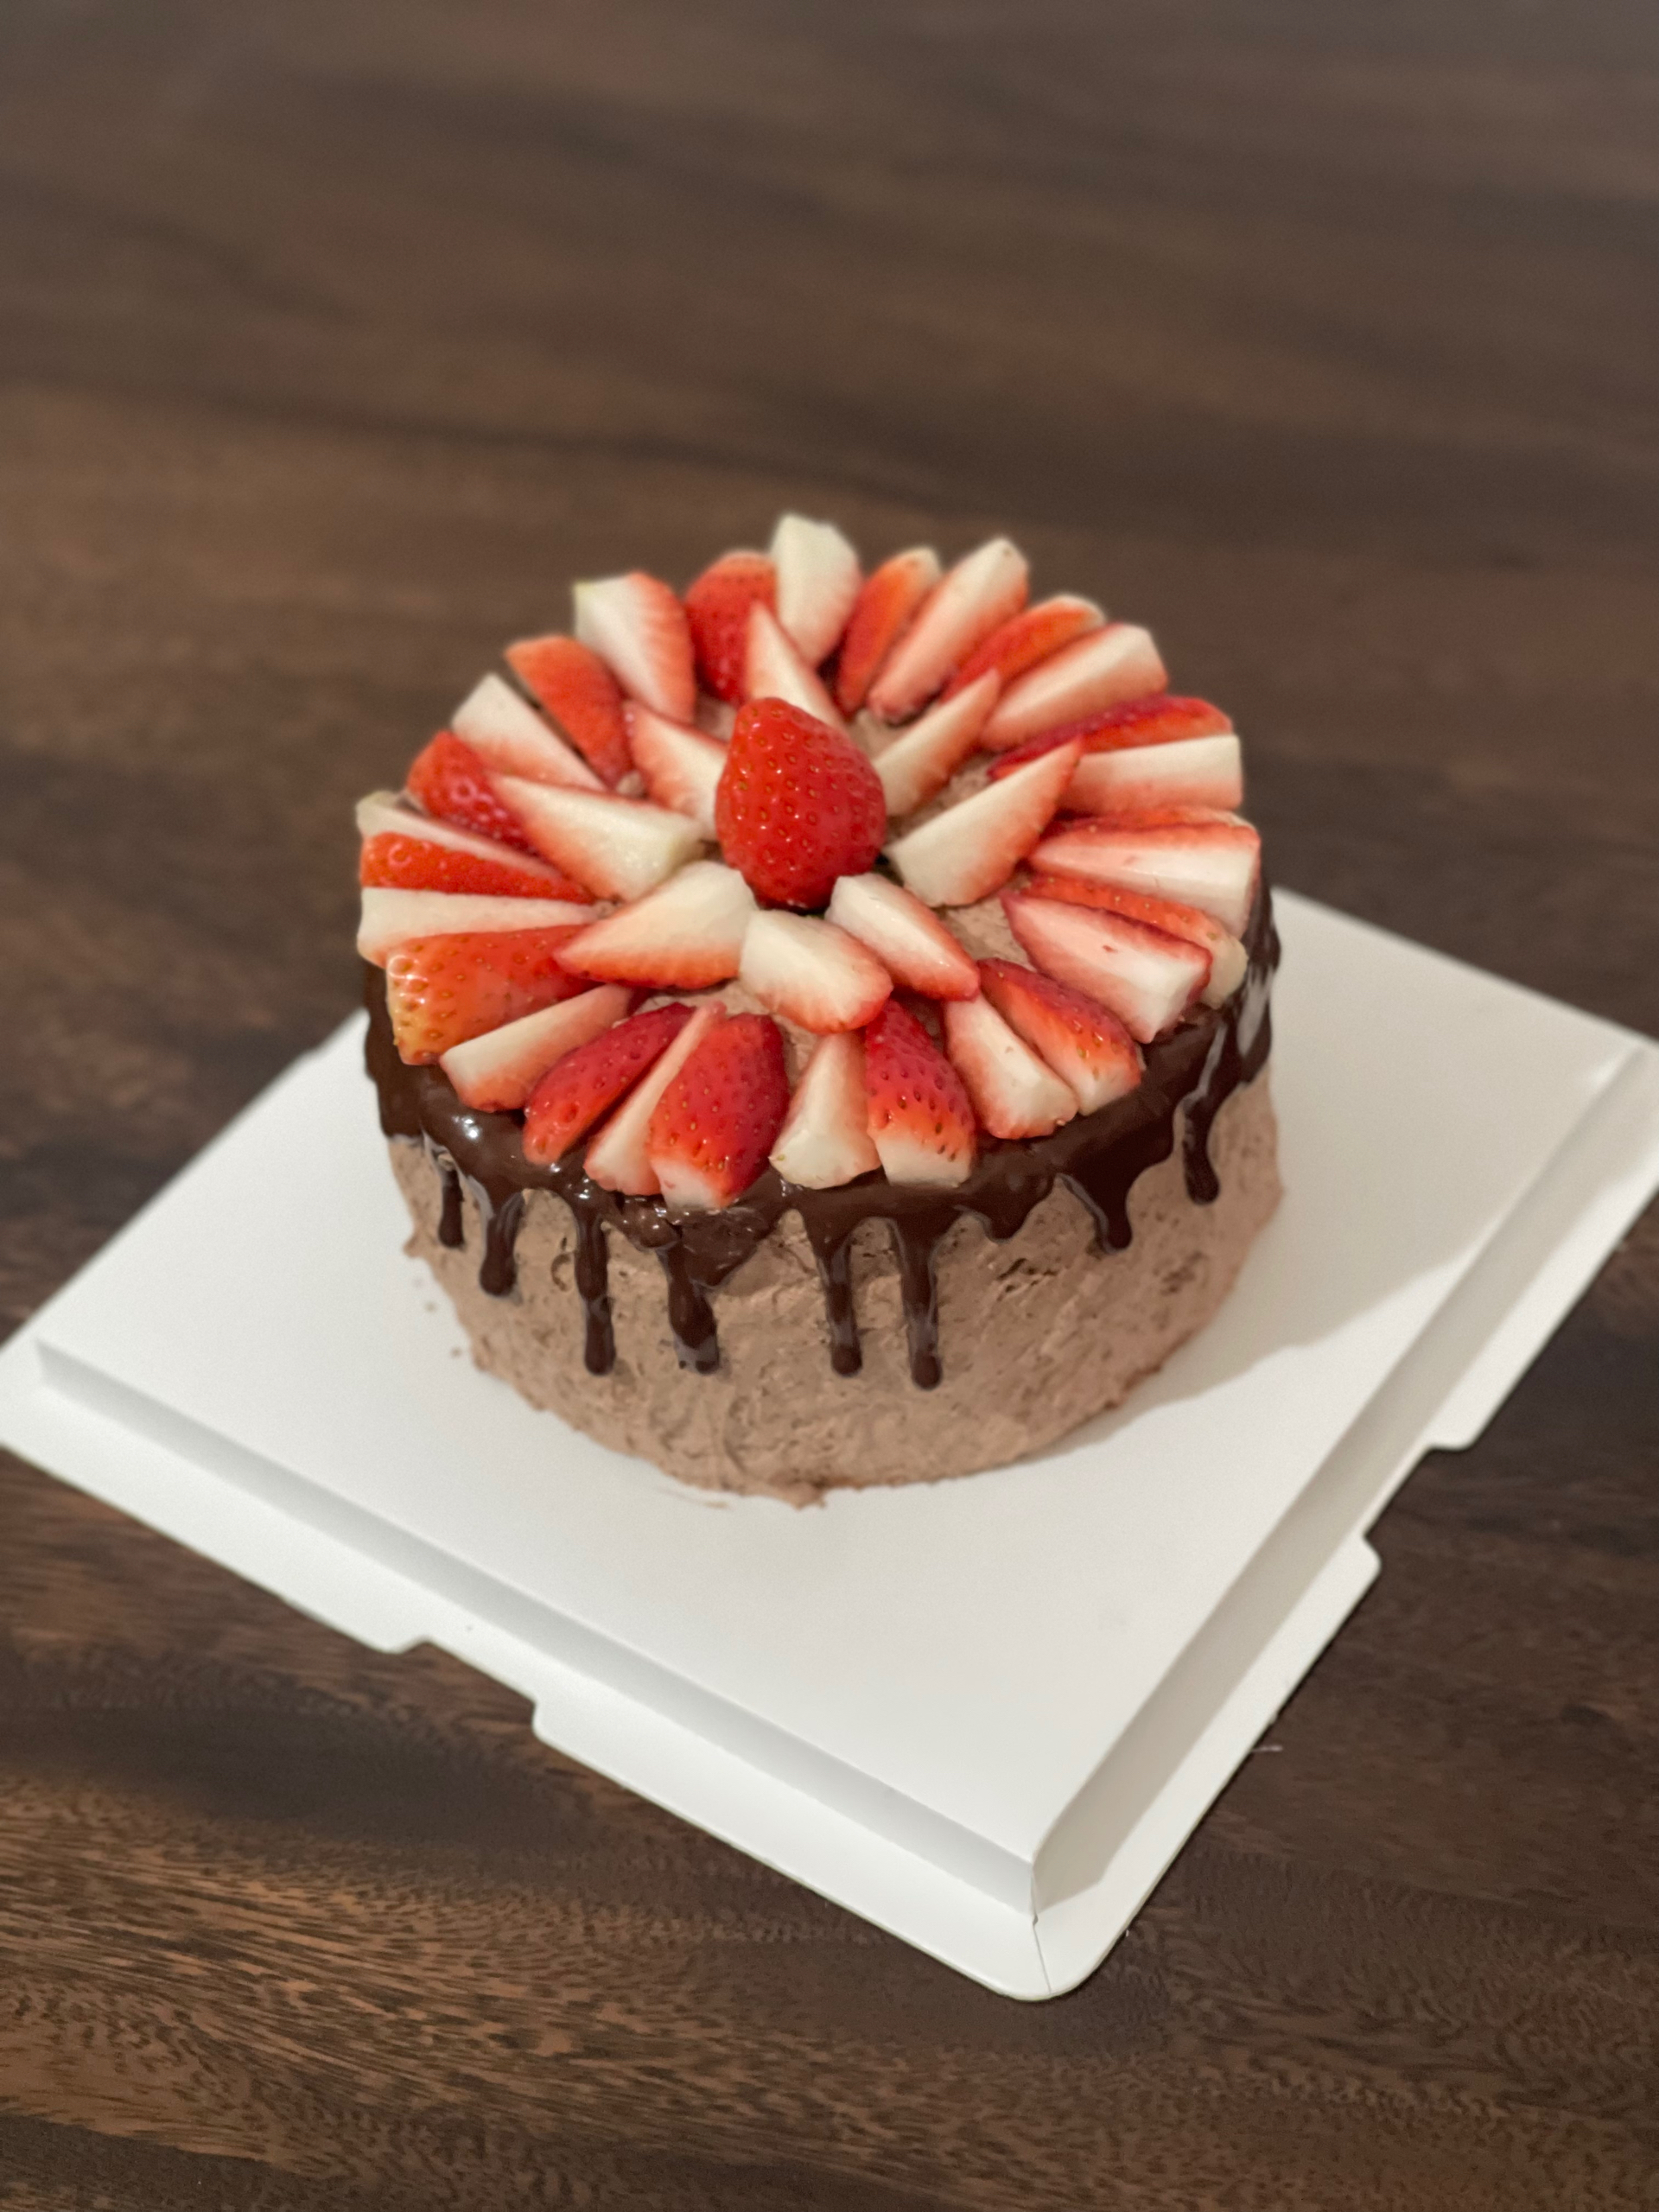 浓郁的草莓巧克力蛋糕